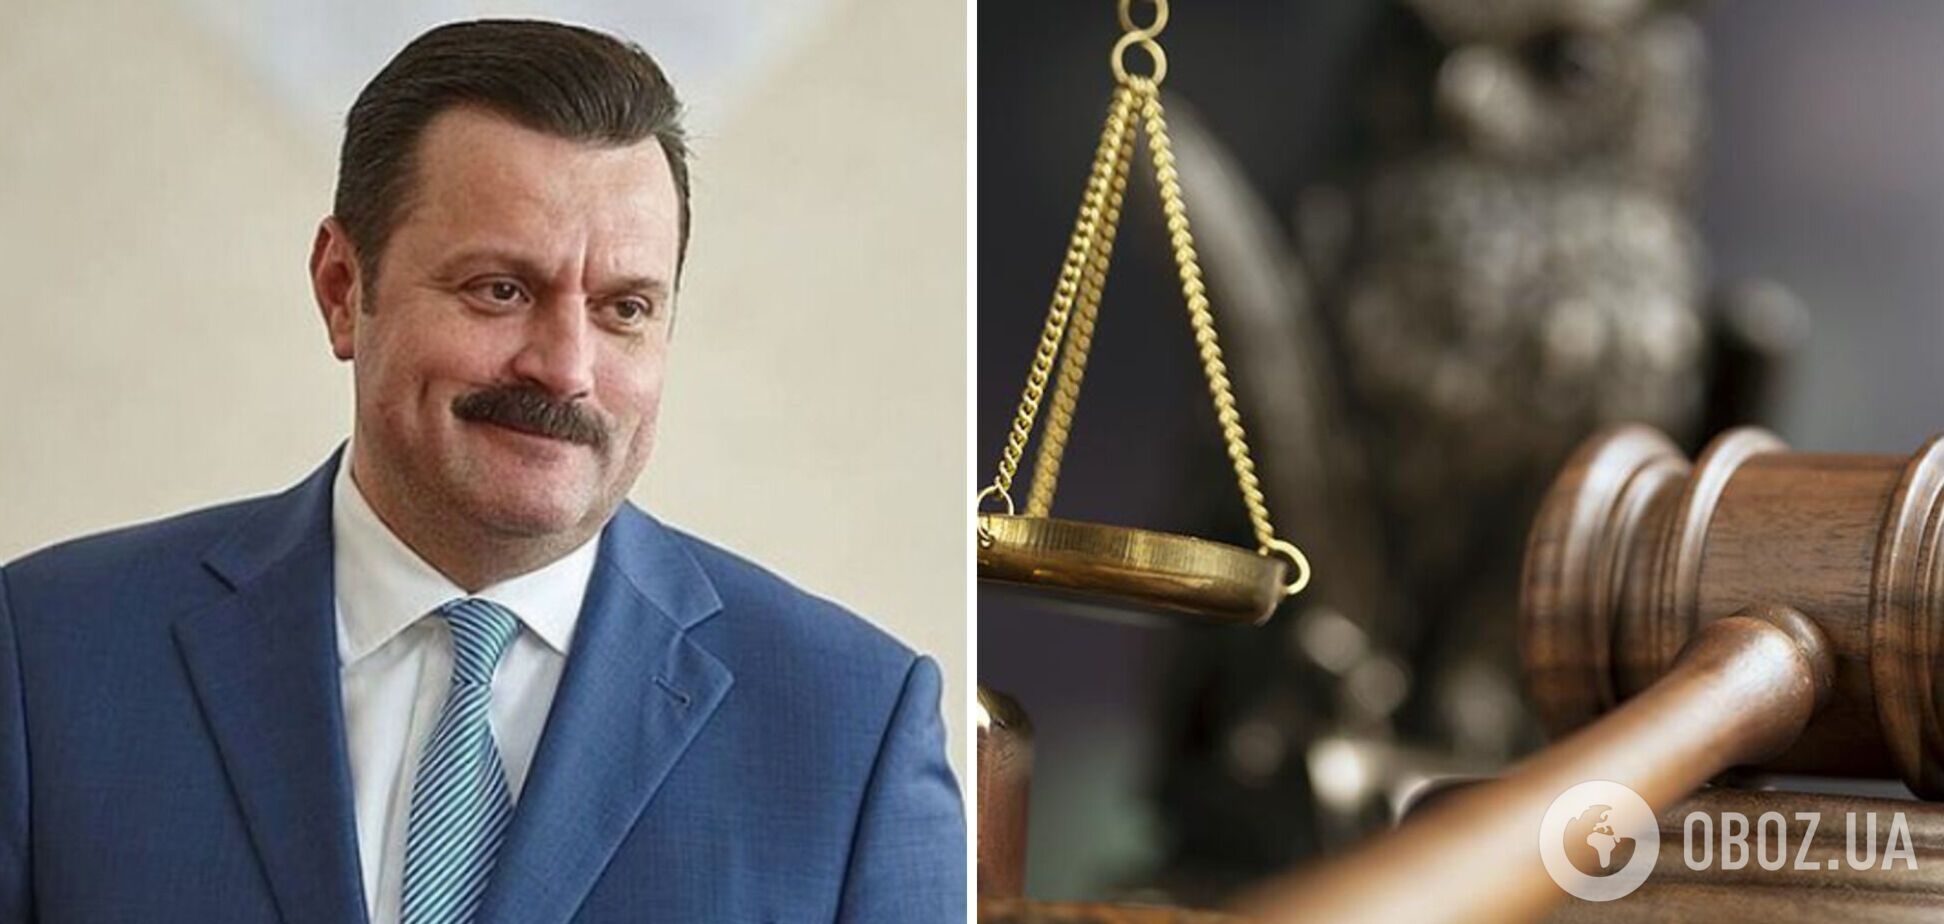 Государственная измена и незаконное обогащение: дело экс-нардепа Деркача направили в суд